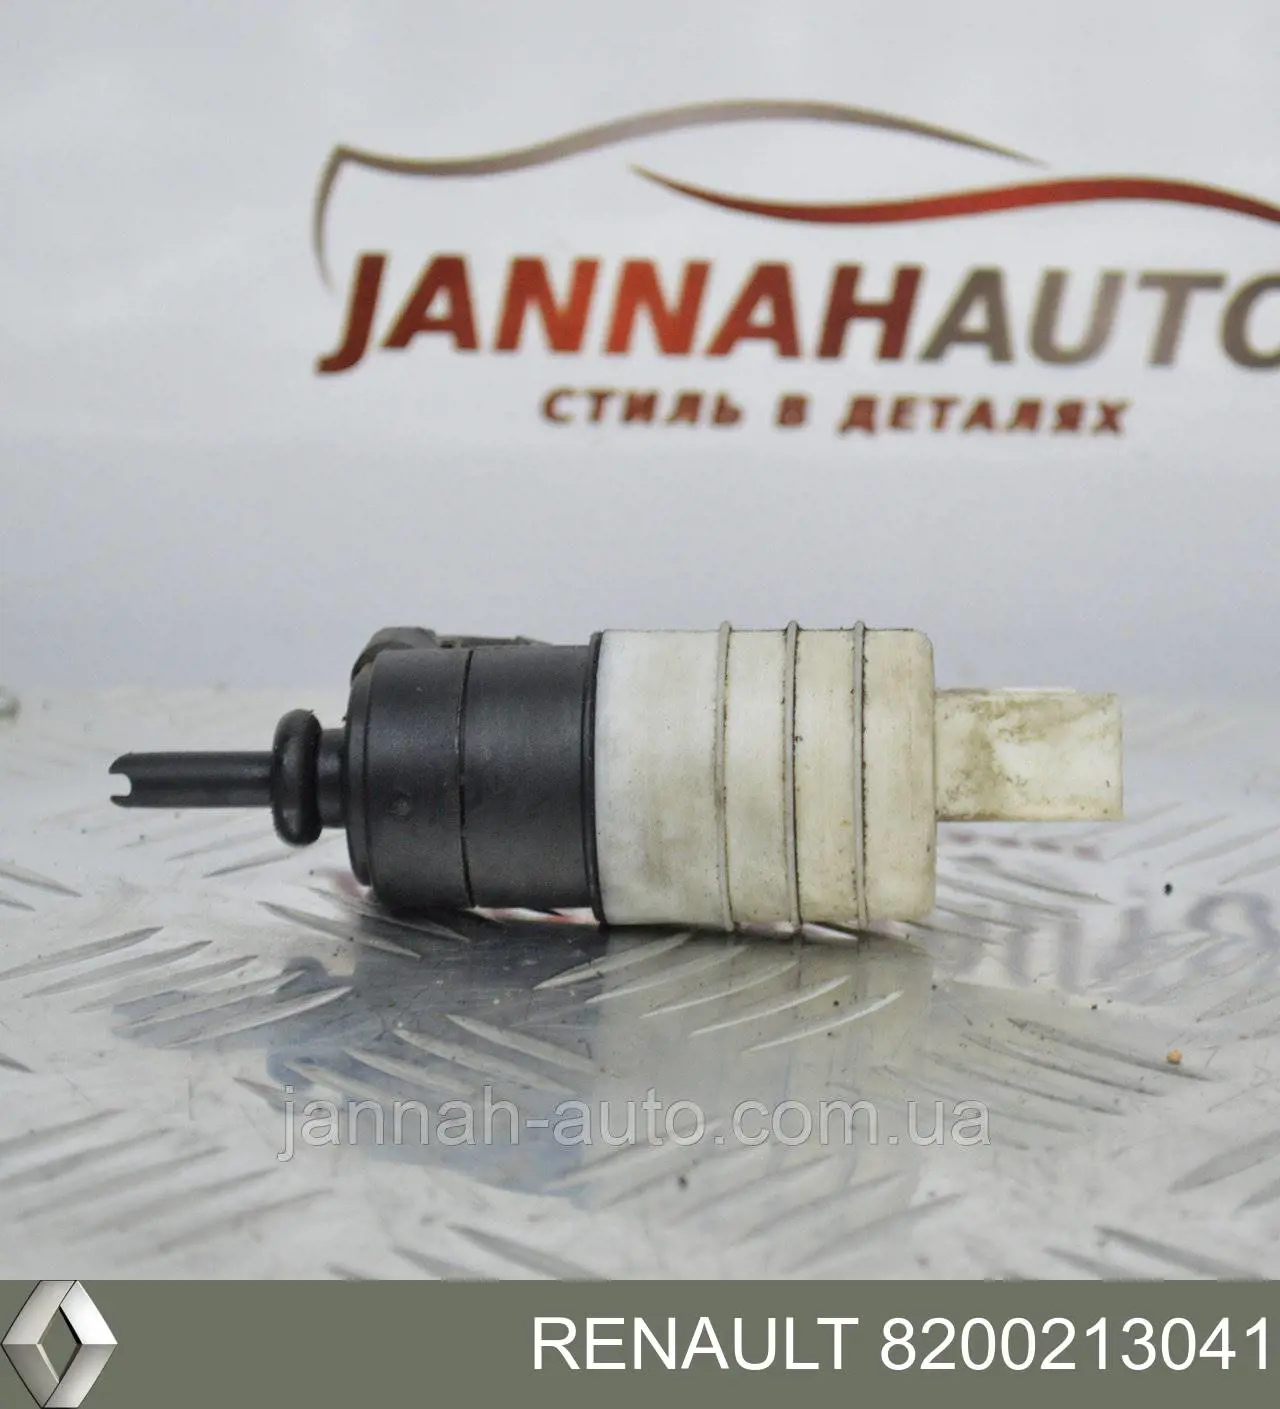 8200213041 Renault (RVI) насос-мотор омывателя стекла переднего/заднего